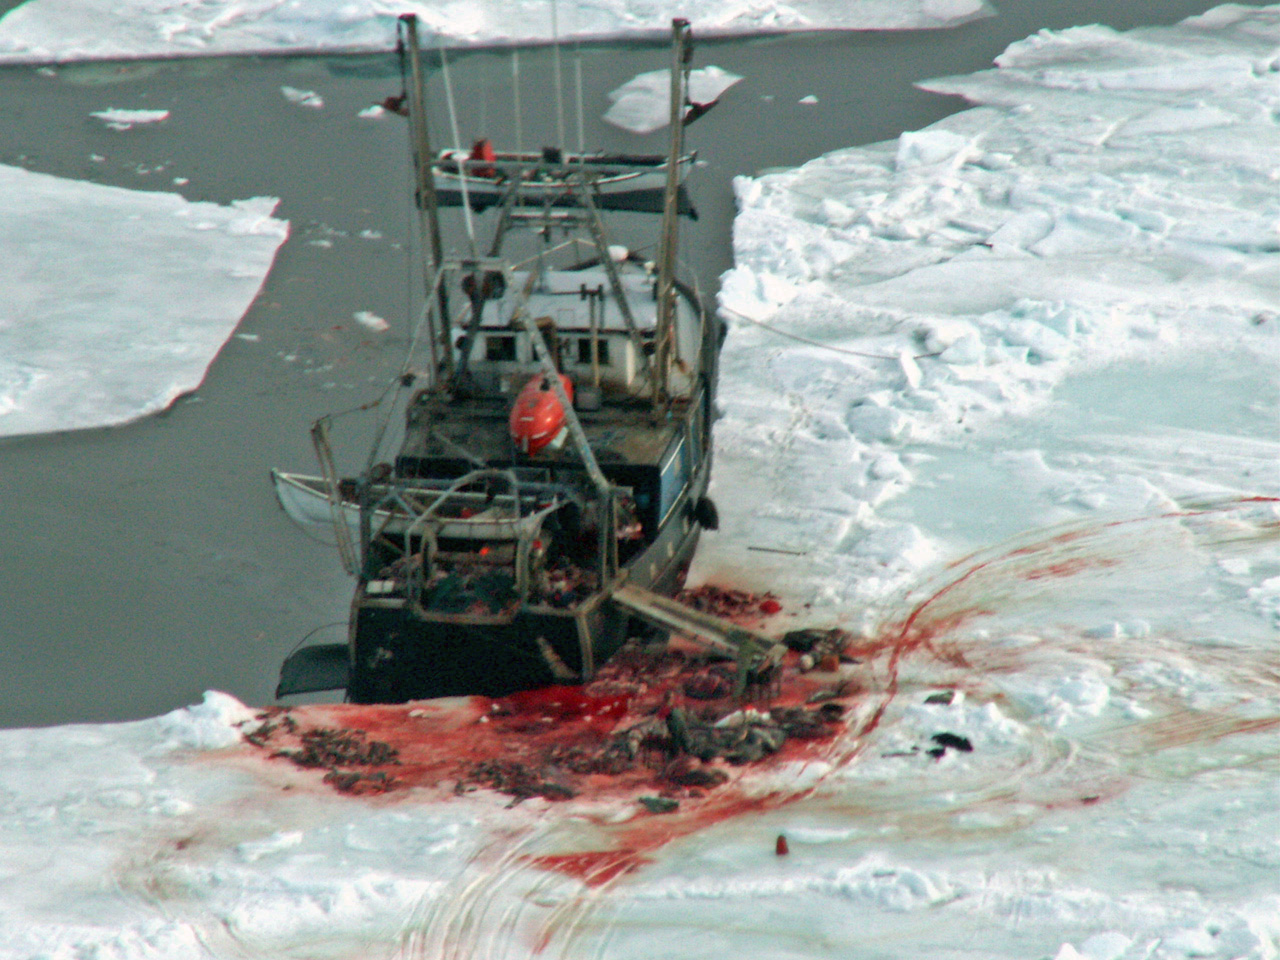 stor gruppe sæler ligger slagtet på isen, som er totalt indsmurt i blod. Et fangsskib er forankret ved siden af de dræbte sæler